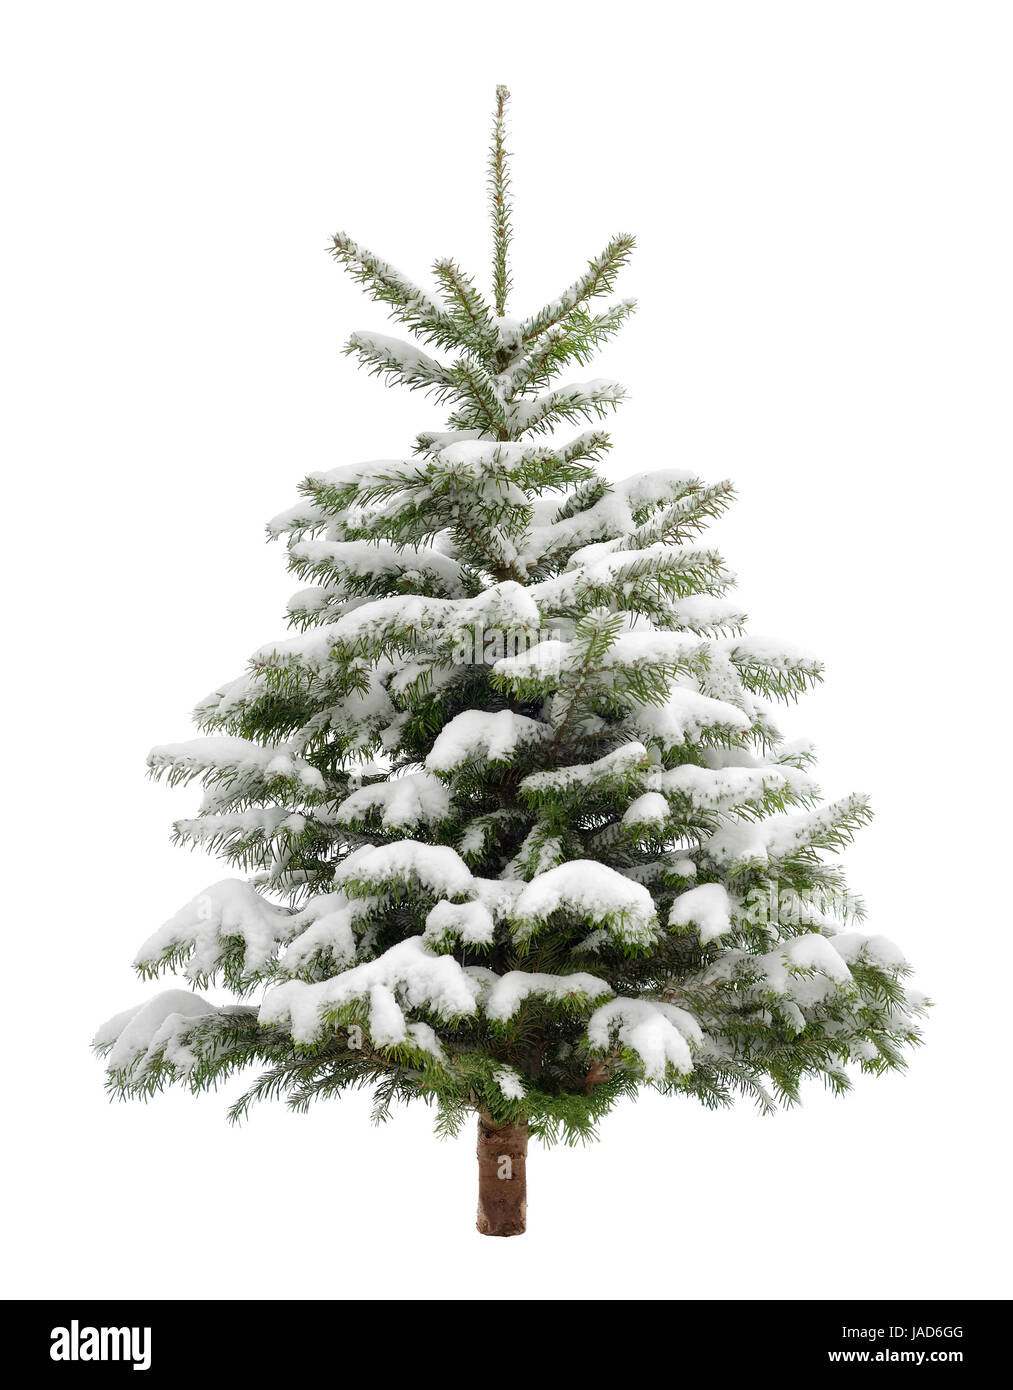 Schön geformter kleiner Tannenbaum im Schnee, isoliert auf weiß Stock Photo